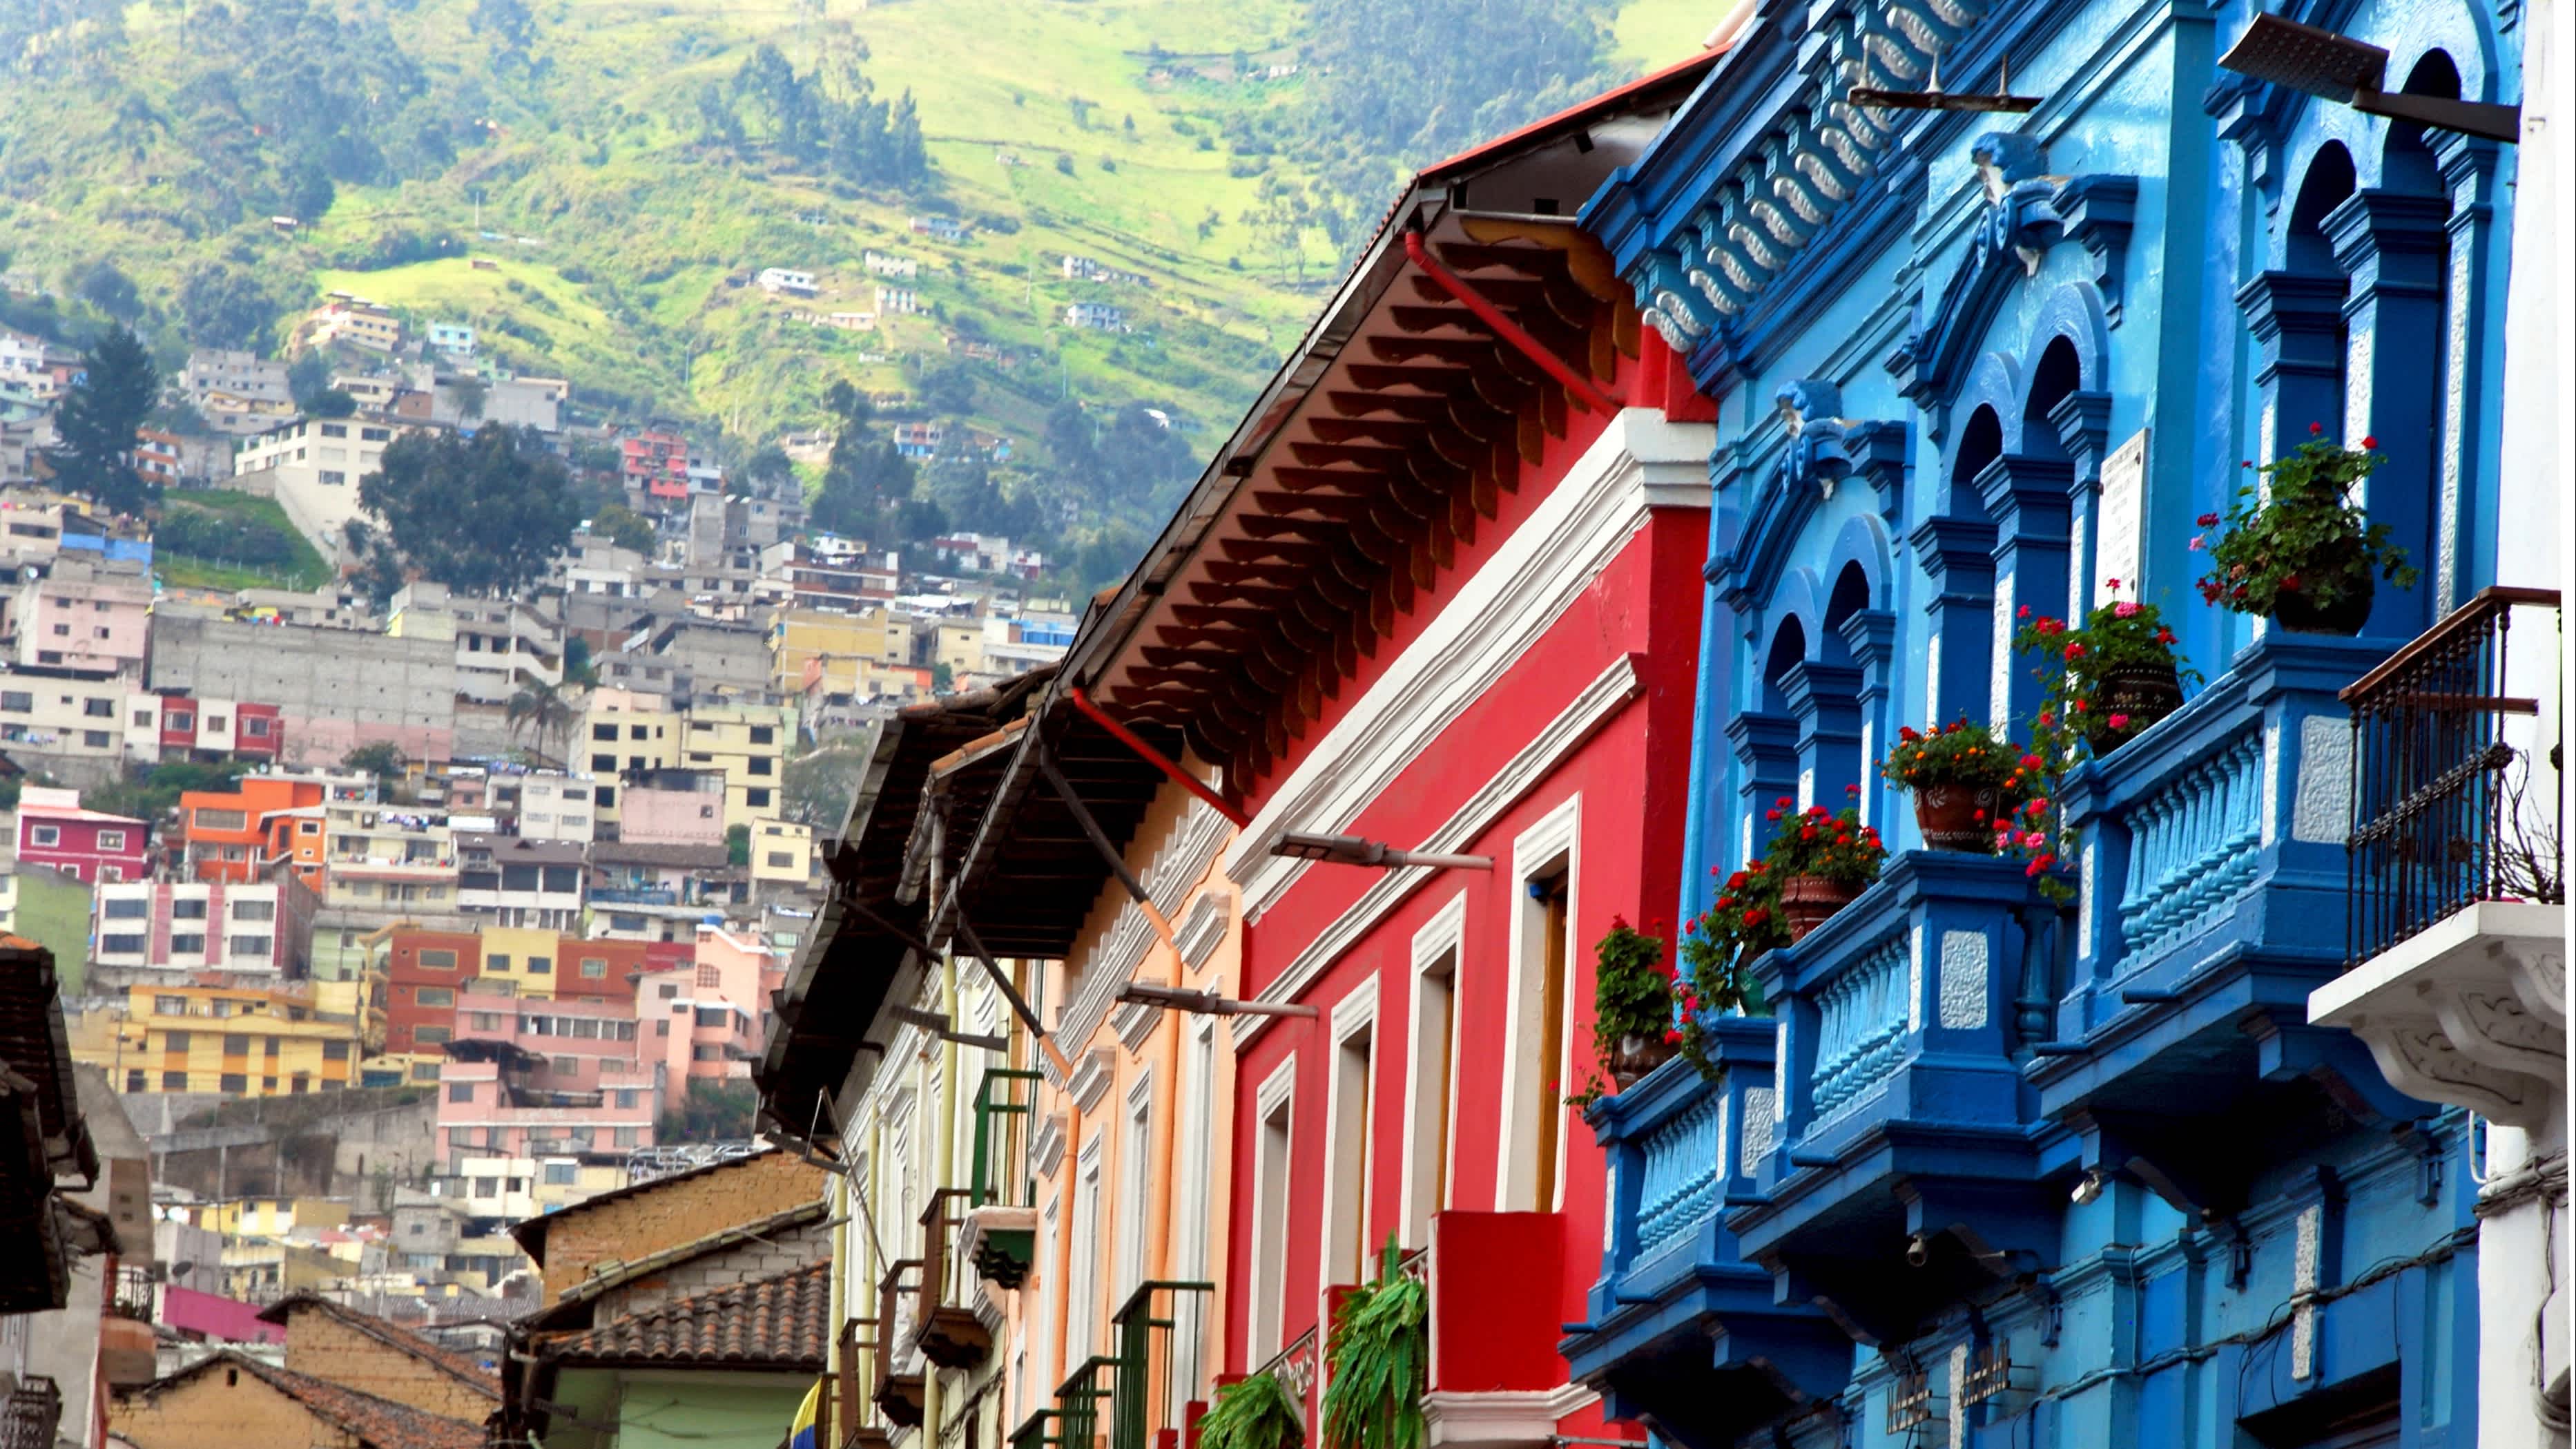 Façades de maisons colorées à Quito en Équateur